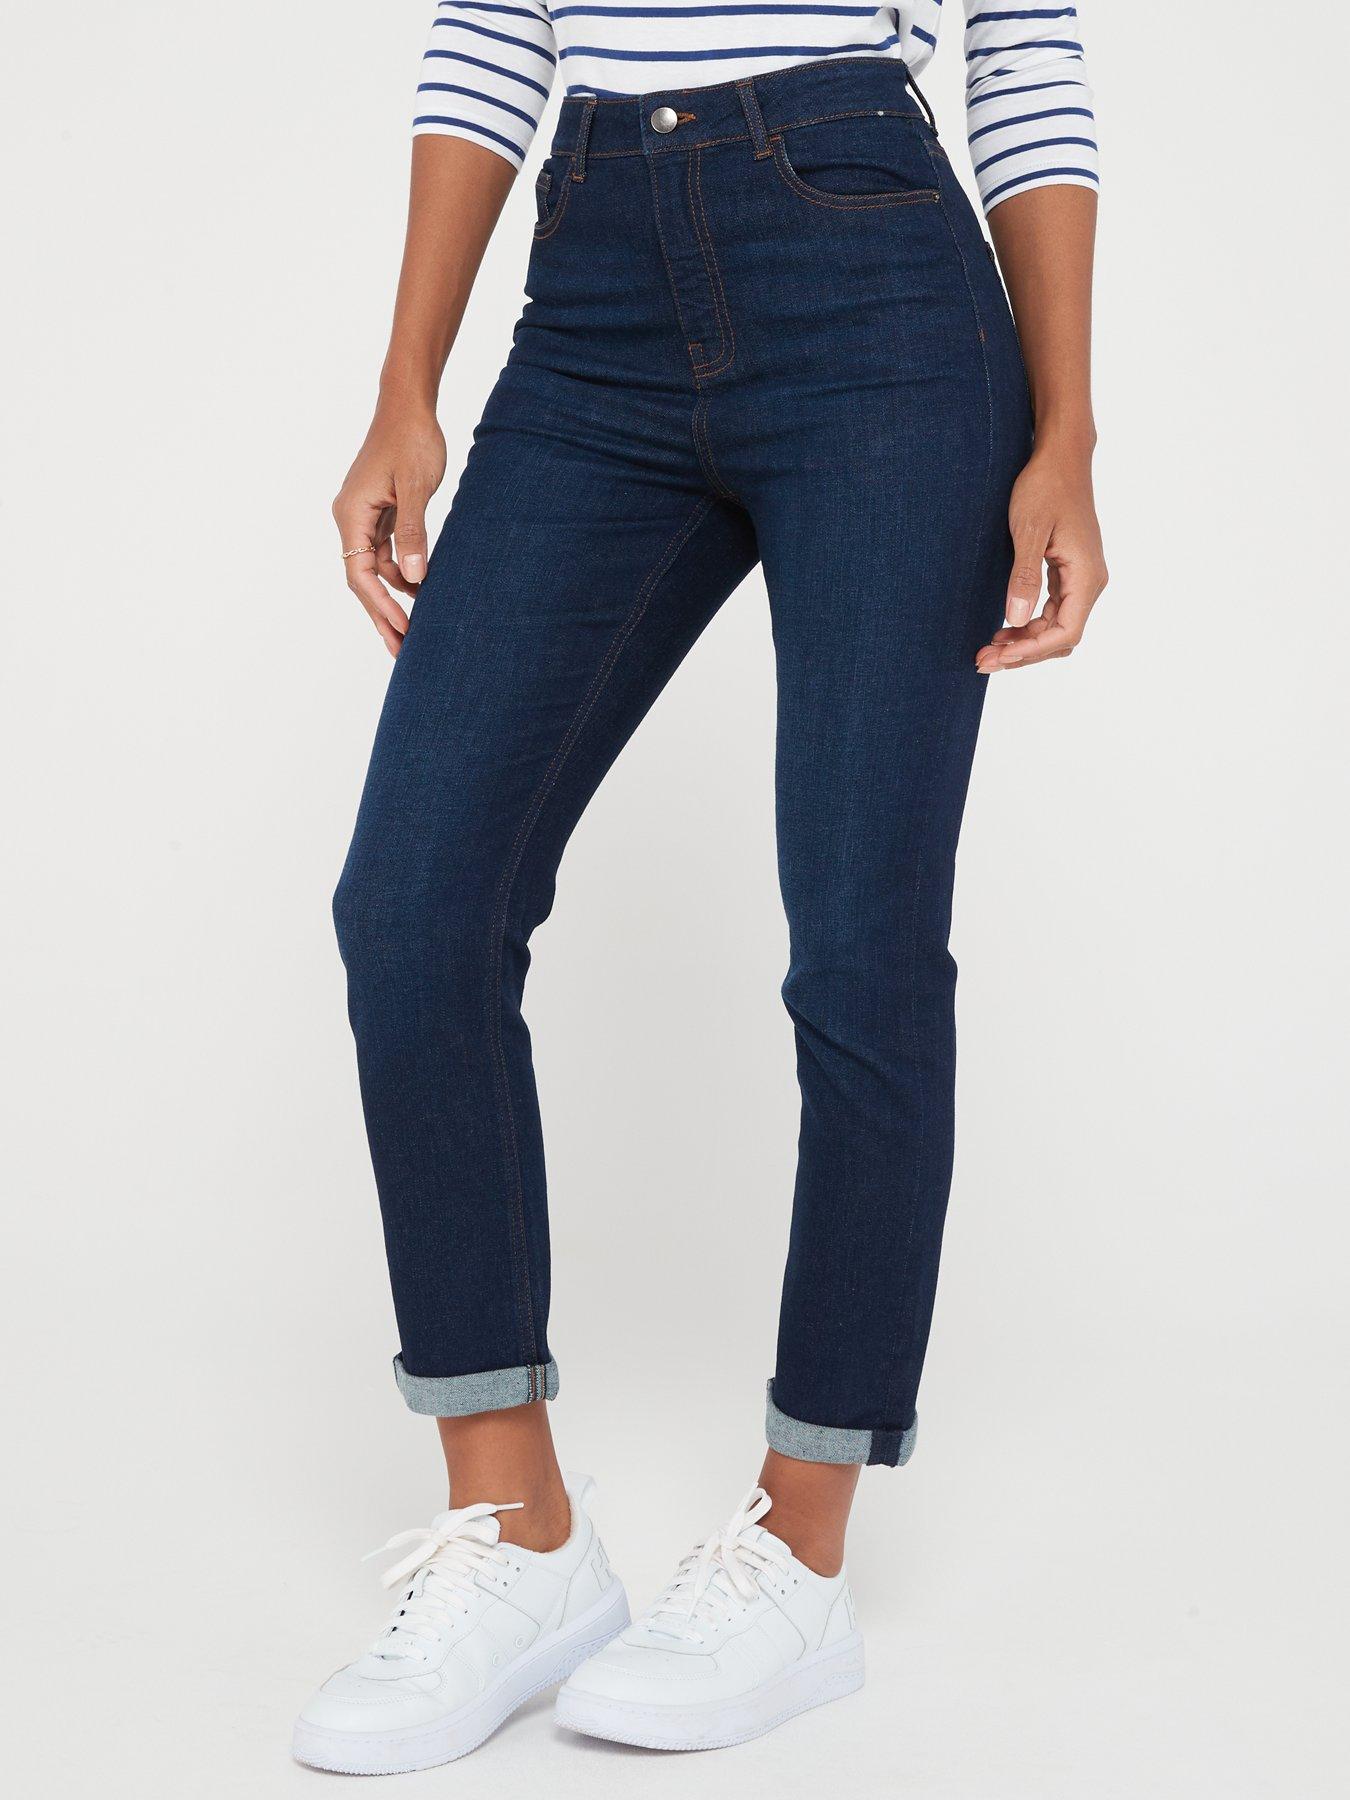 Levis 414 Classic Straight Women's Jeans (Plus Size) Blue Mixtape